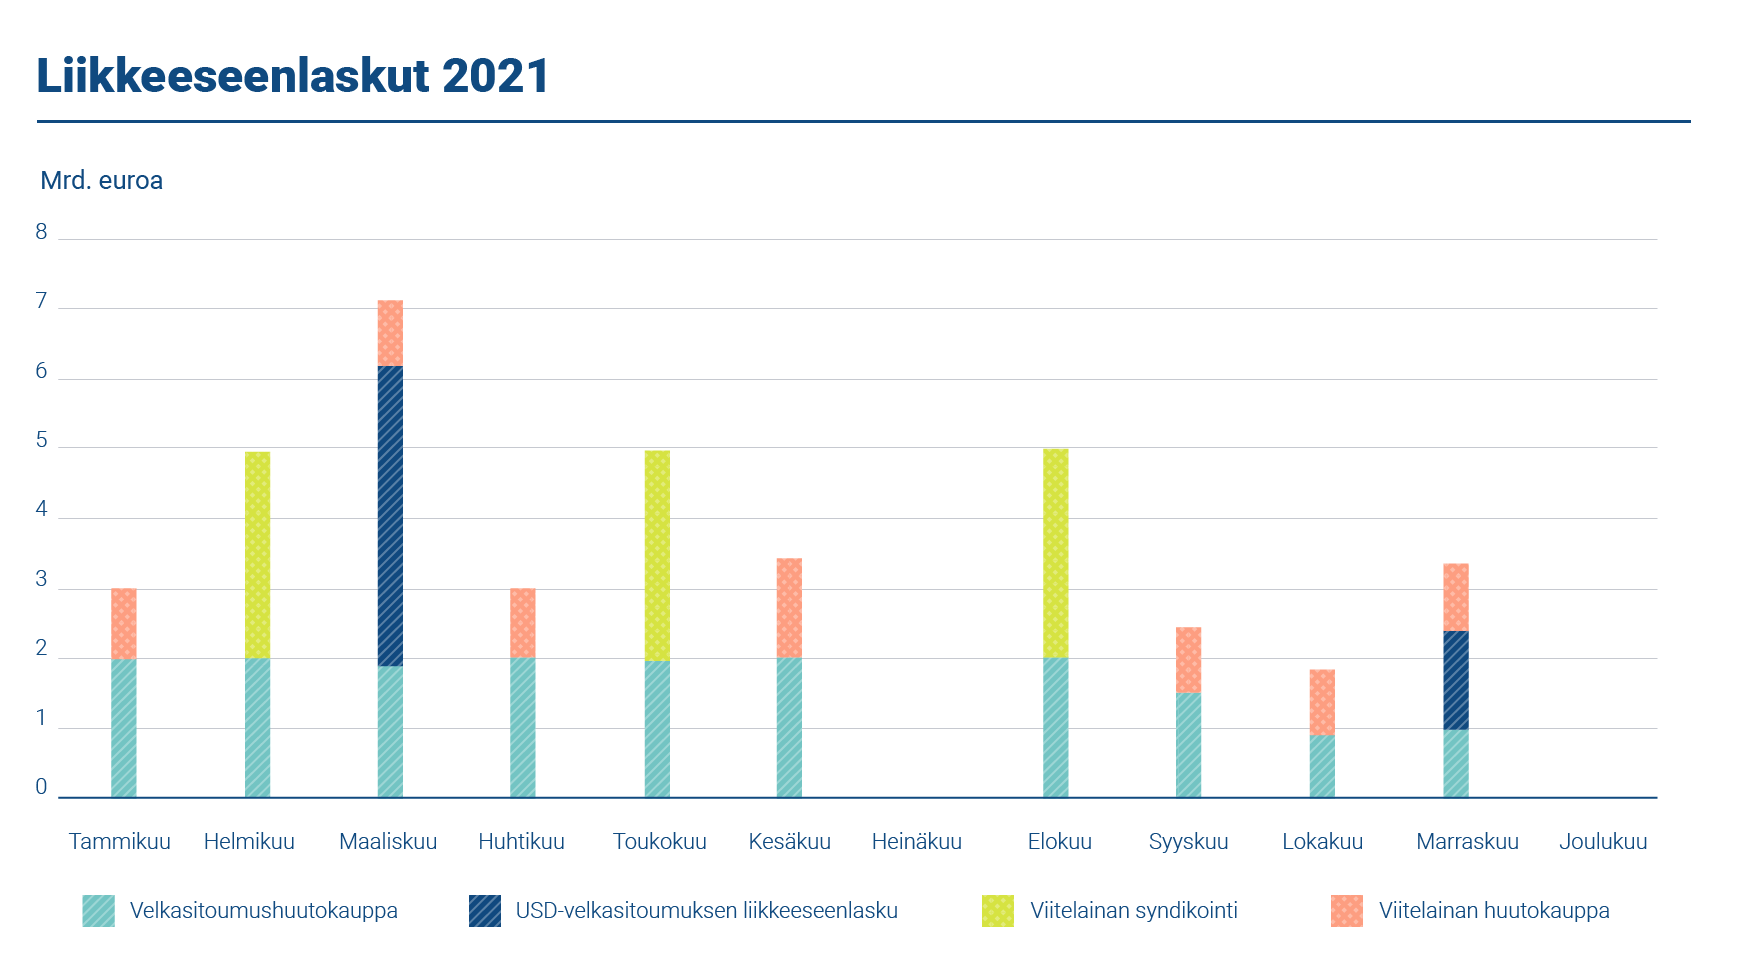 Kaaviossa esitetään liikkeeseenlaskut vuonna 2021. Suomi laski liikkeeseen kolme uutta euromääräistä viitelainaa ja järjesti kuusi viitelainahuutokauppaa. Lyhytaikainen rahoitus toteutettiin laskemalla liikkeeseen valtion velkasitoumuksia.